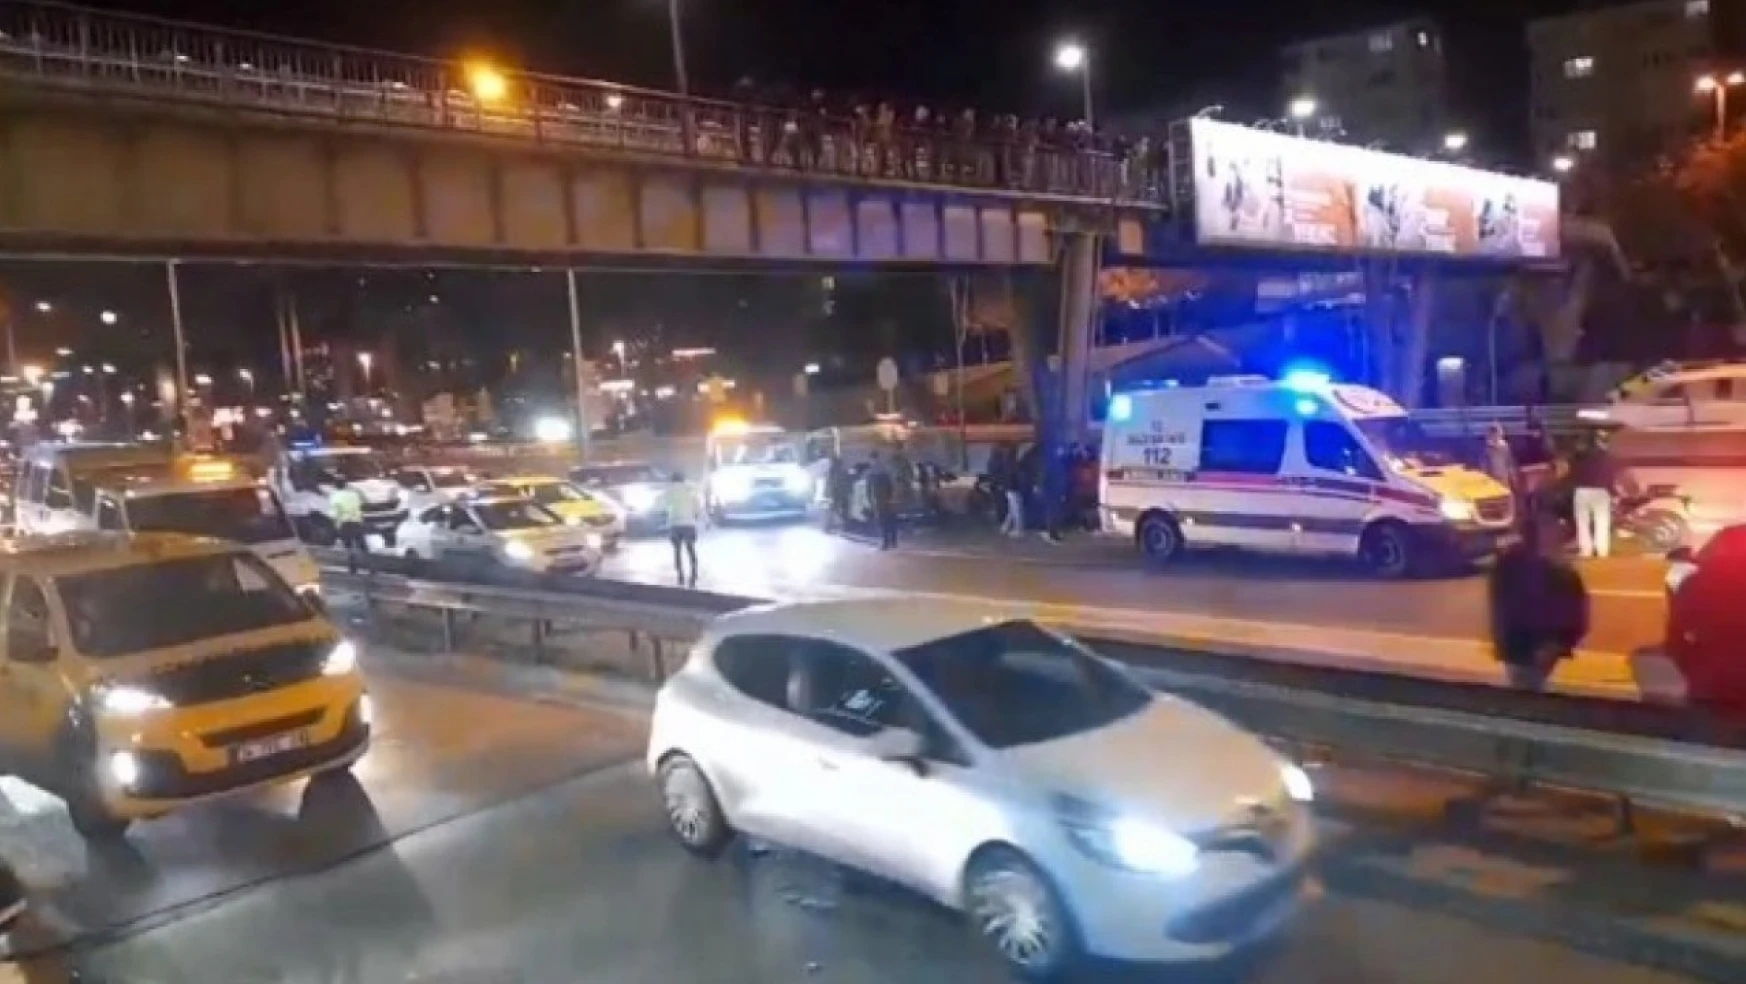 Kadıköy'de bir kişi üst geçitten atladı